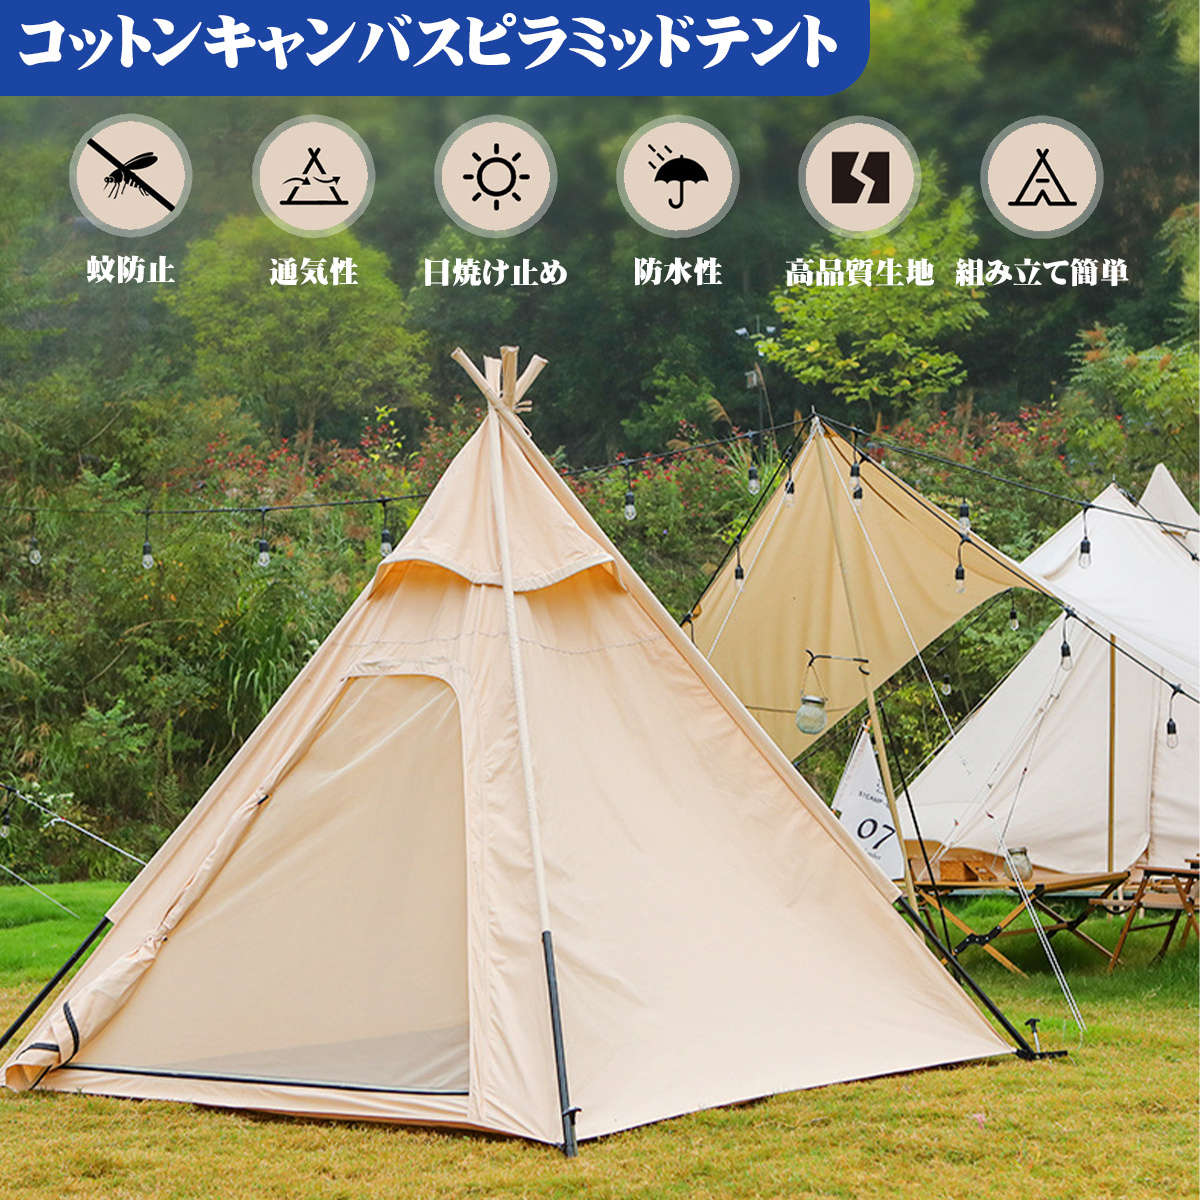 ティピー型テント ピラミッド型 三角テント キャンプテント 通気性 